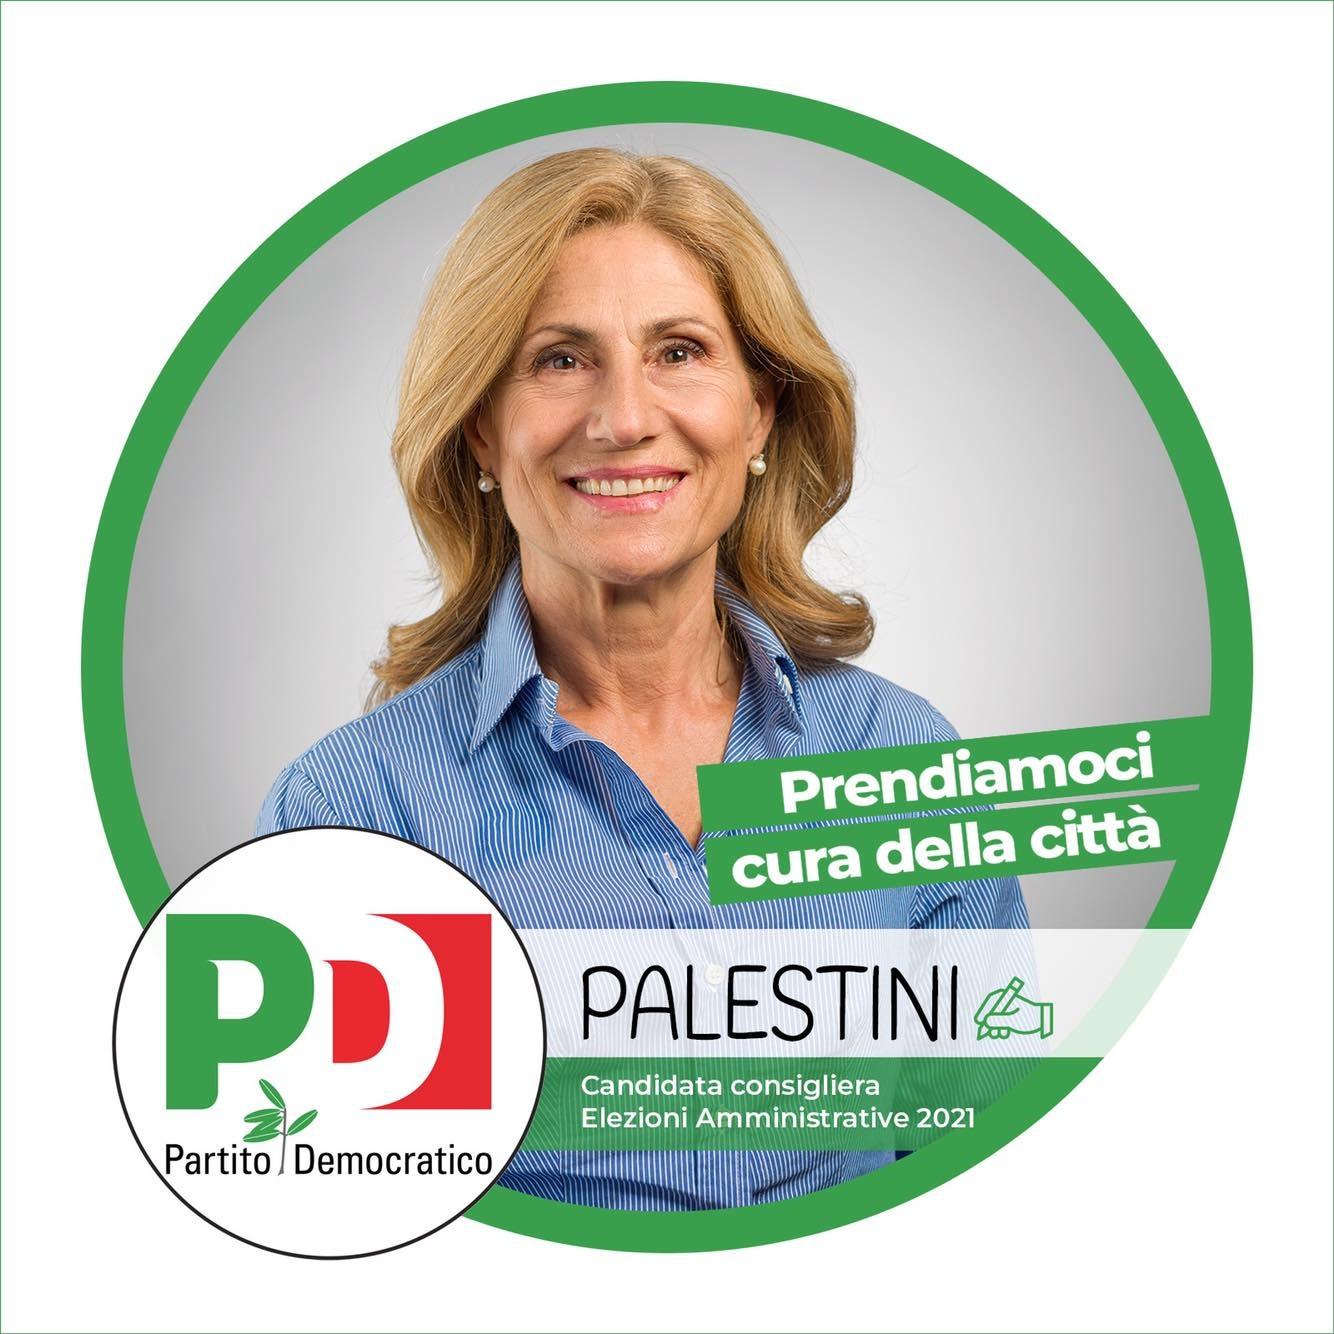 Segretario comunale Pd, Diana Palestini succede a Claudio Benigni